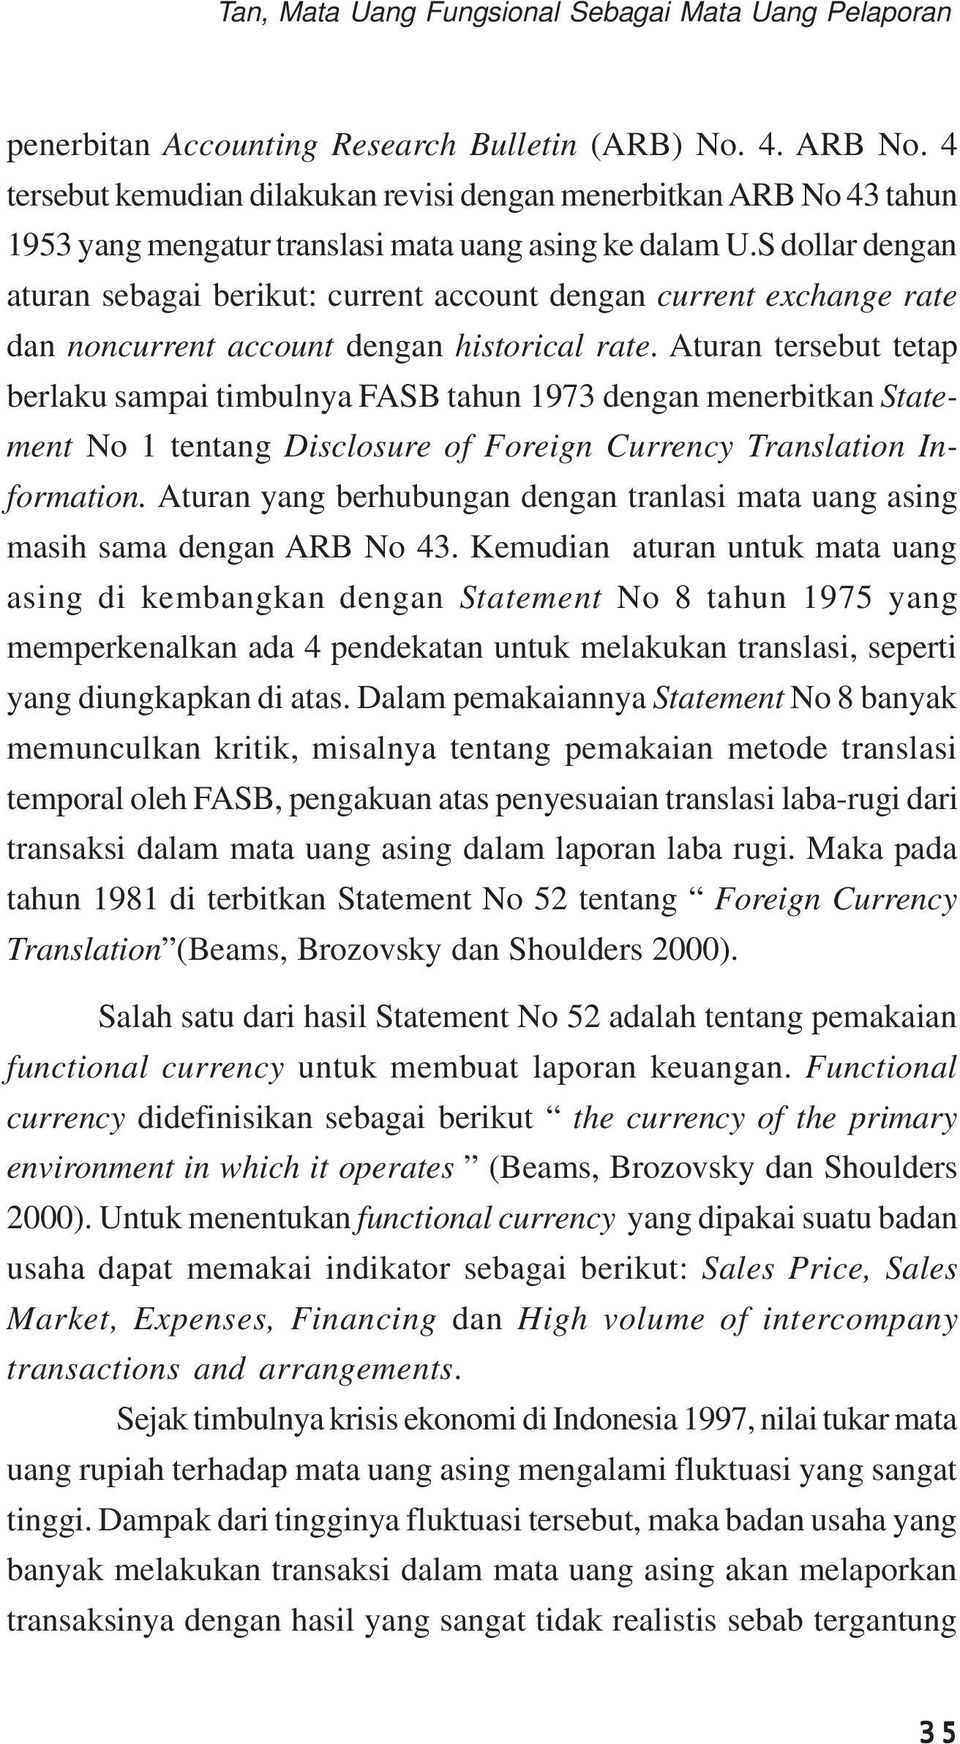 Aturan tersebut tetap berlaku sampai timbulnya FASB tahun 1973 dengan menerbitkan Statement No 1 tentang Disclosure of Foreign Currency Translation Information.